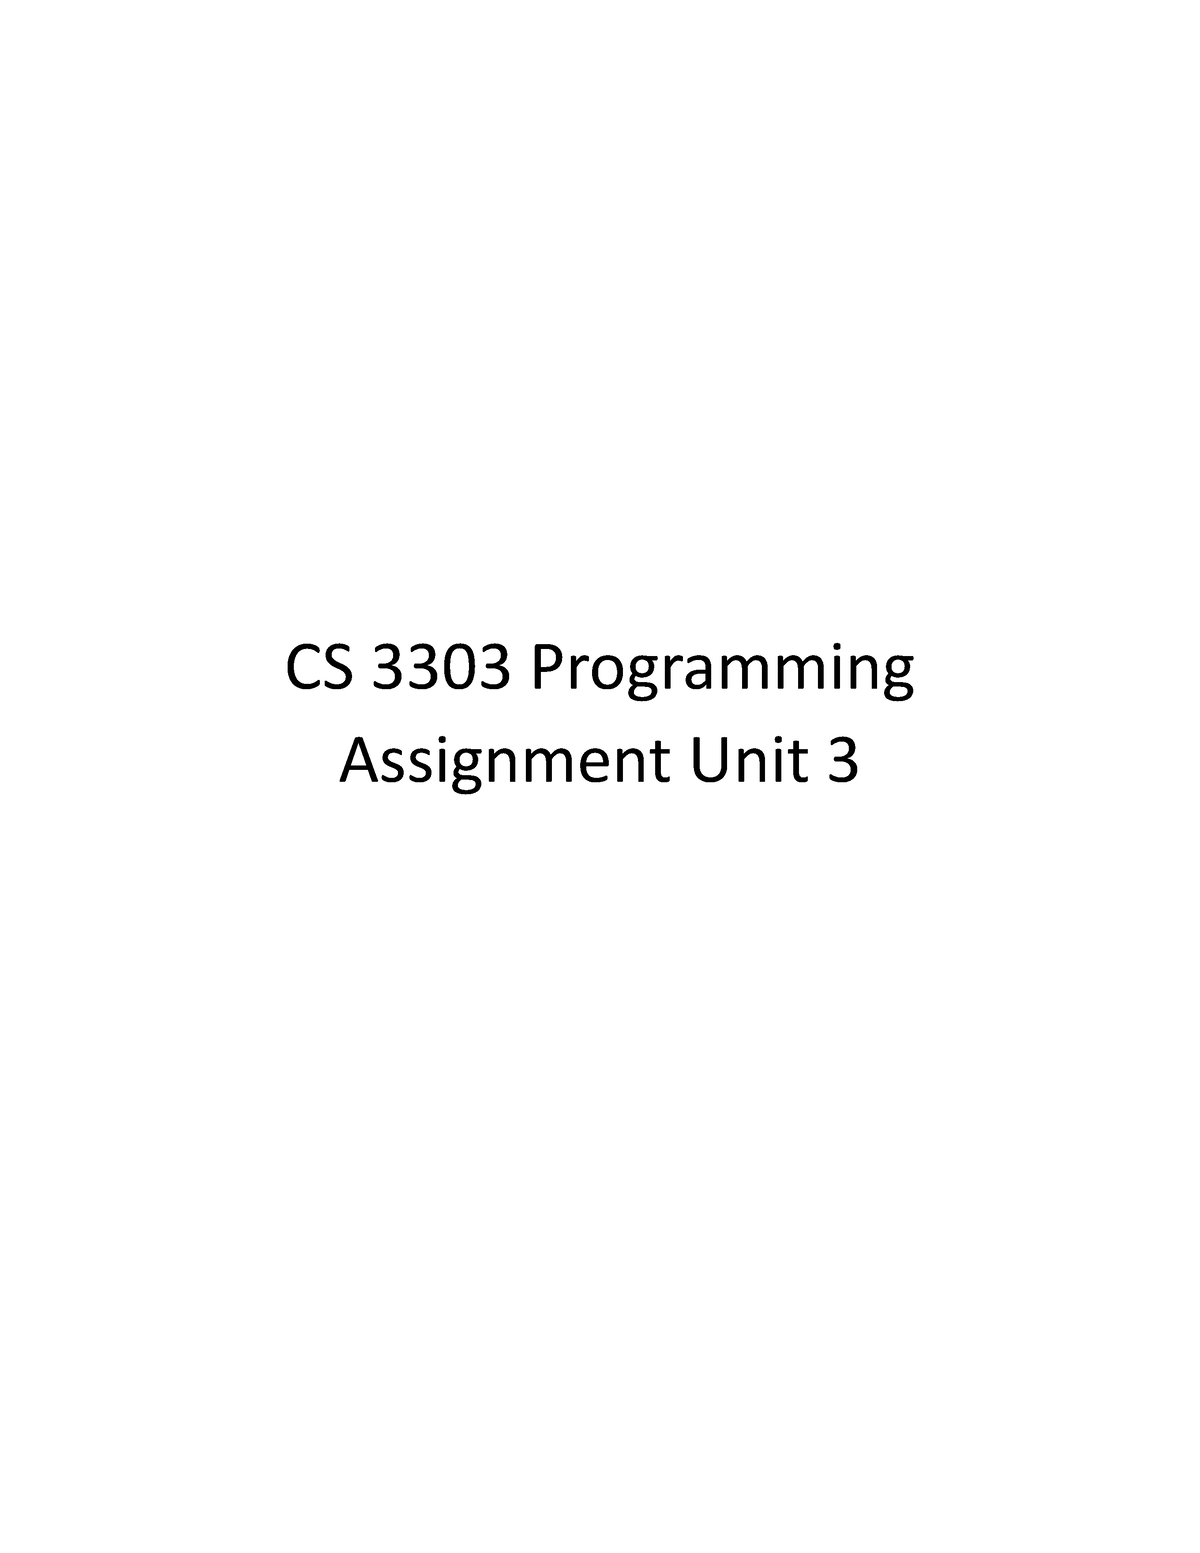 CS 3303 Assignment Unit 3 - CS 3303 Programming Assignment Unit 3 ...